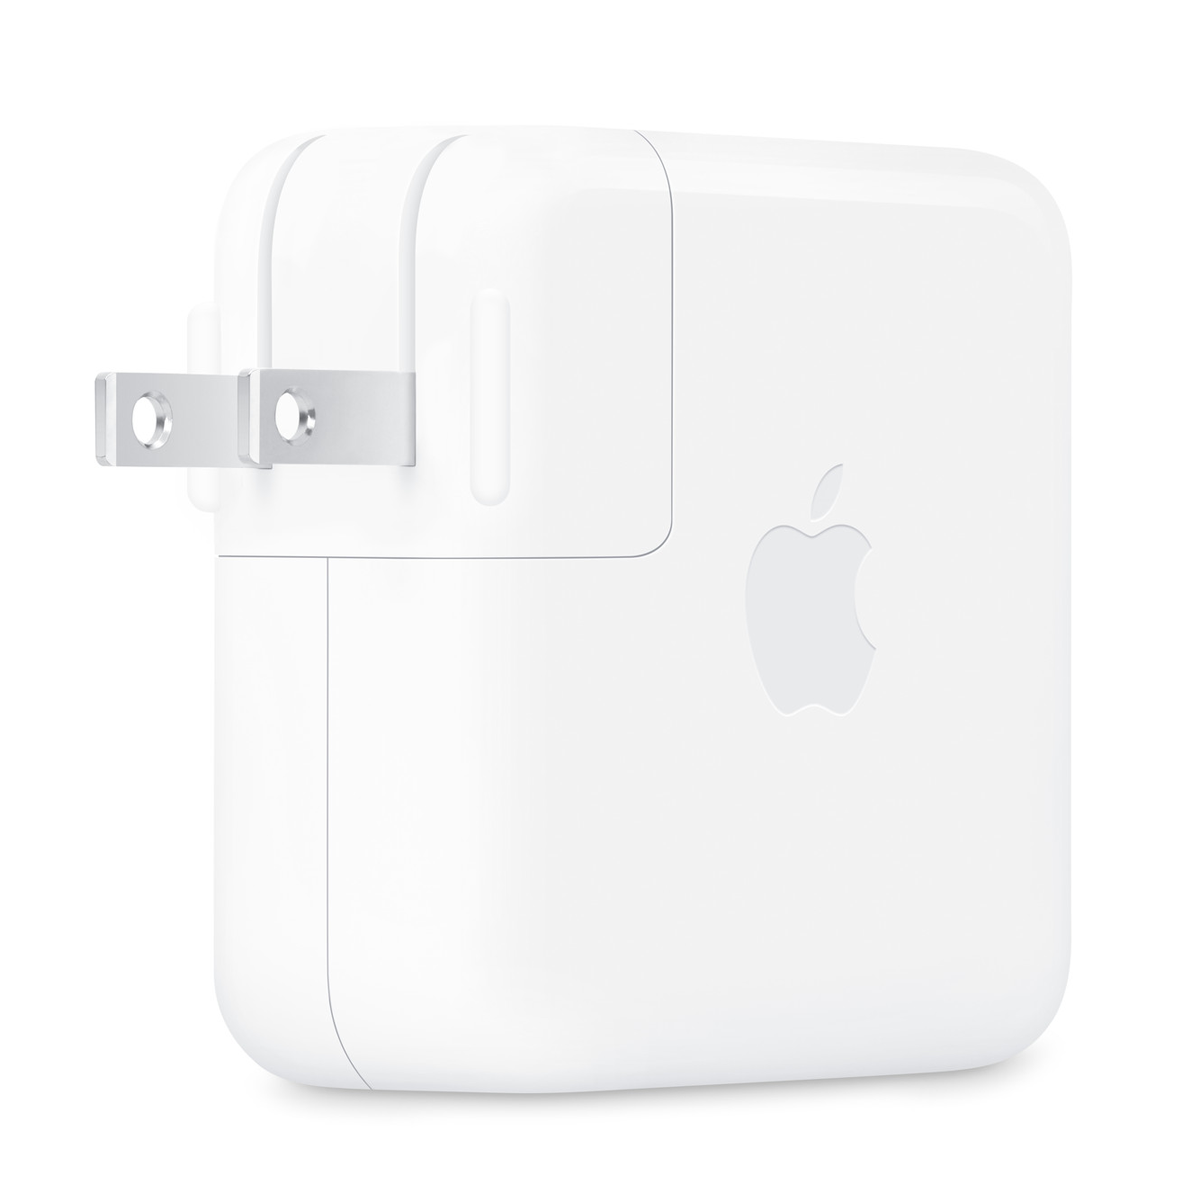 شارژر دیواری اپل مدل USB-C توان 70 وات-سفید